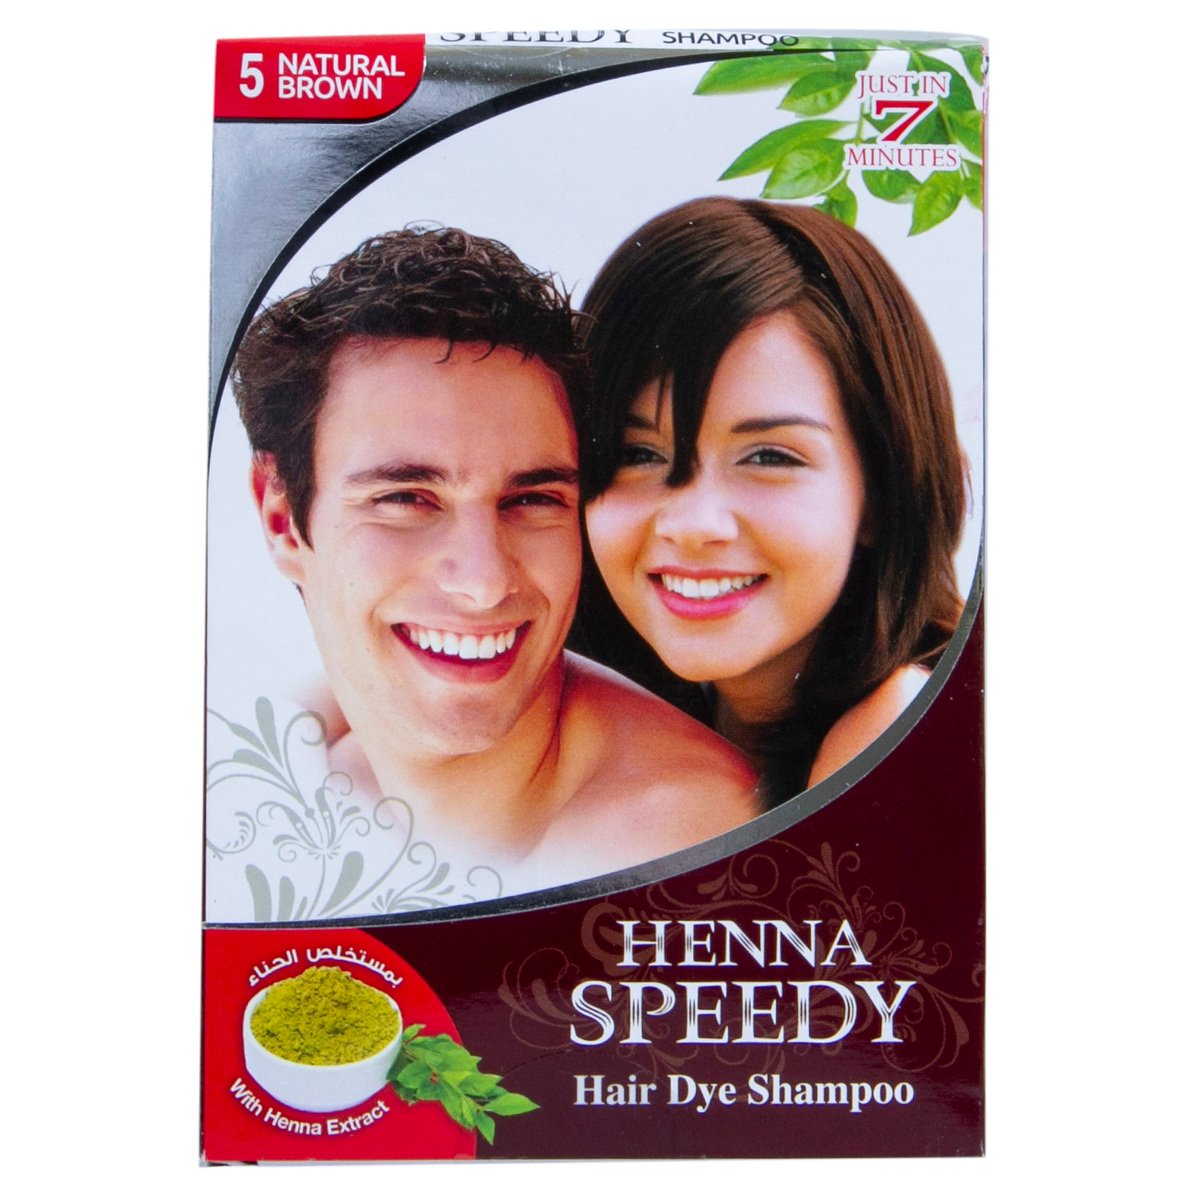 Hanna Speedy Natural Brown 5 Hair Dye Shampoo 30 ml